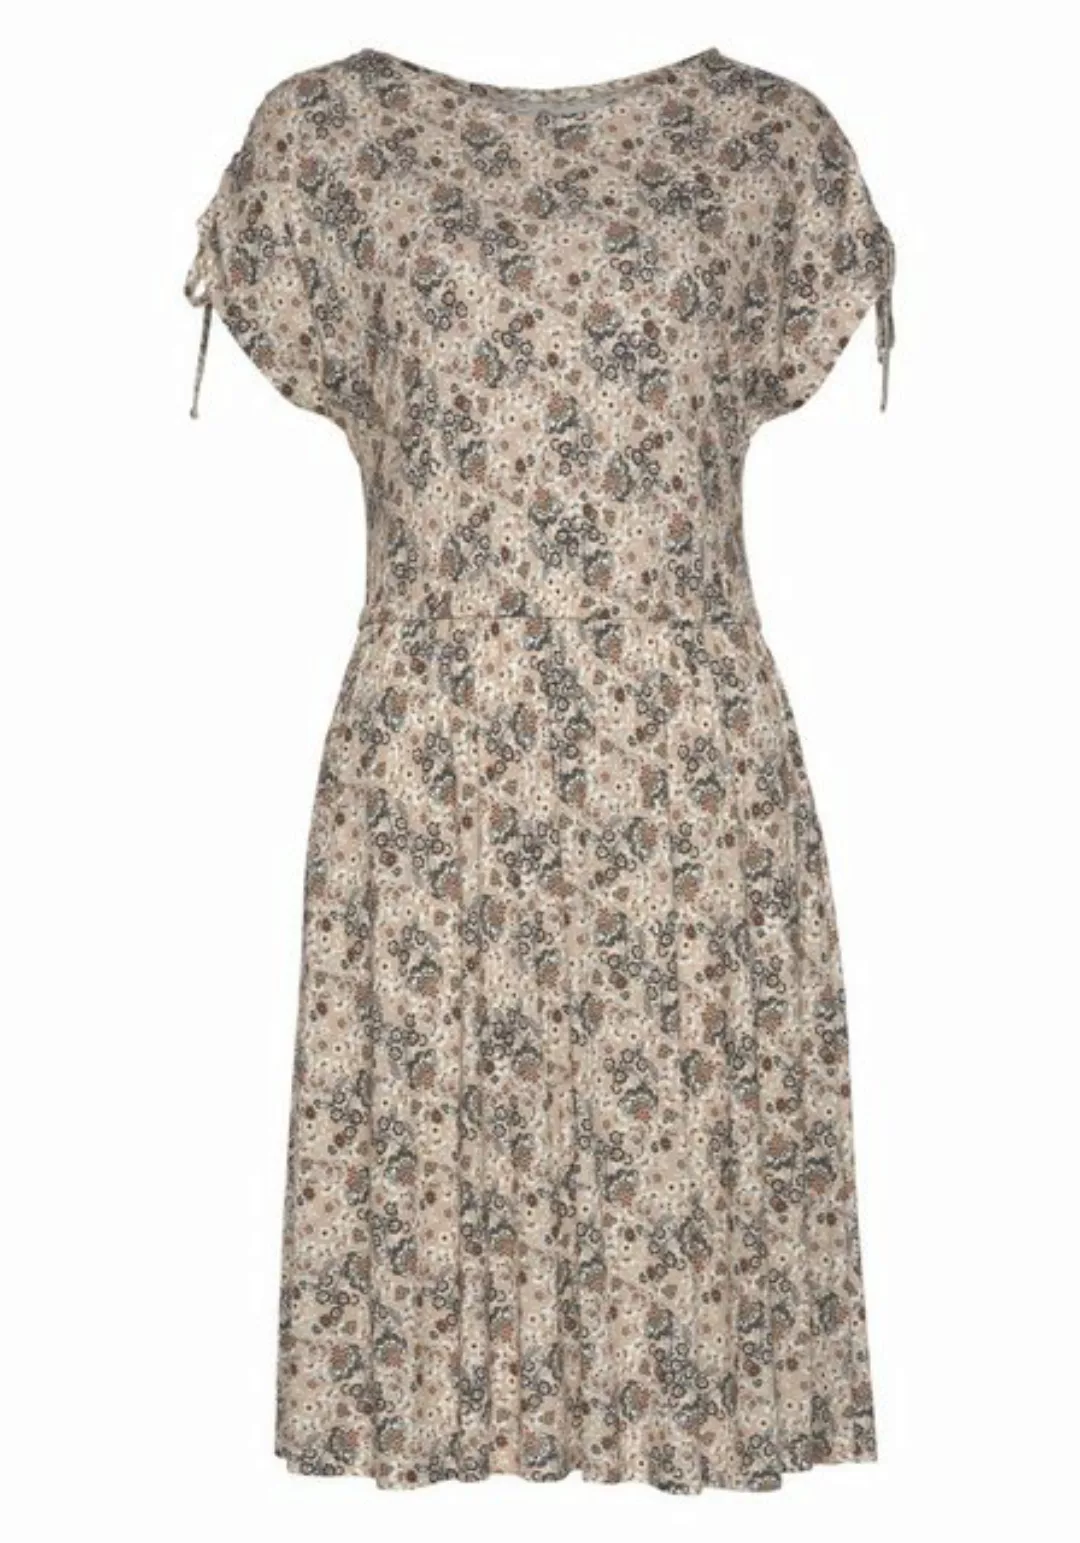 Vivance Jerseykleid mit Blümchendruck, lockeres Sommerkleid, Strandkleid günstig online kaufen